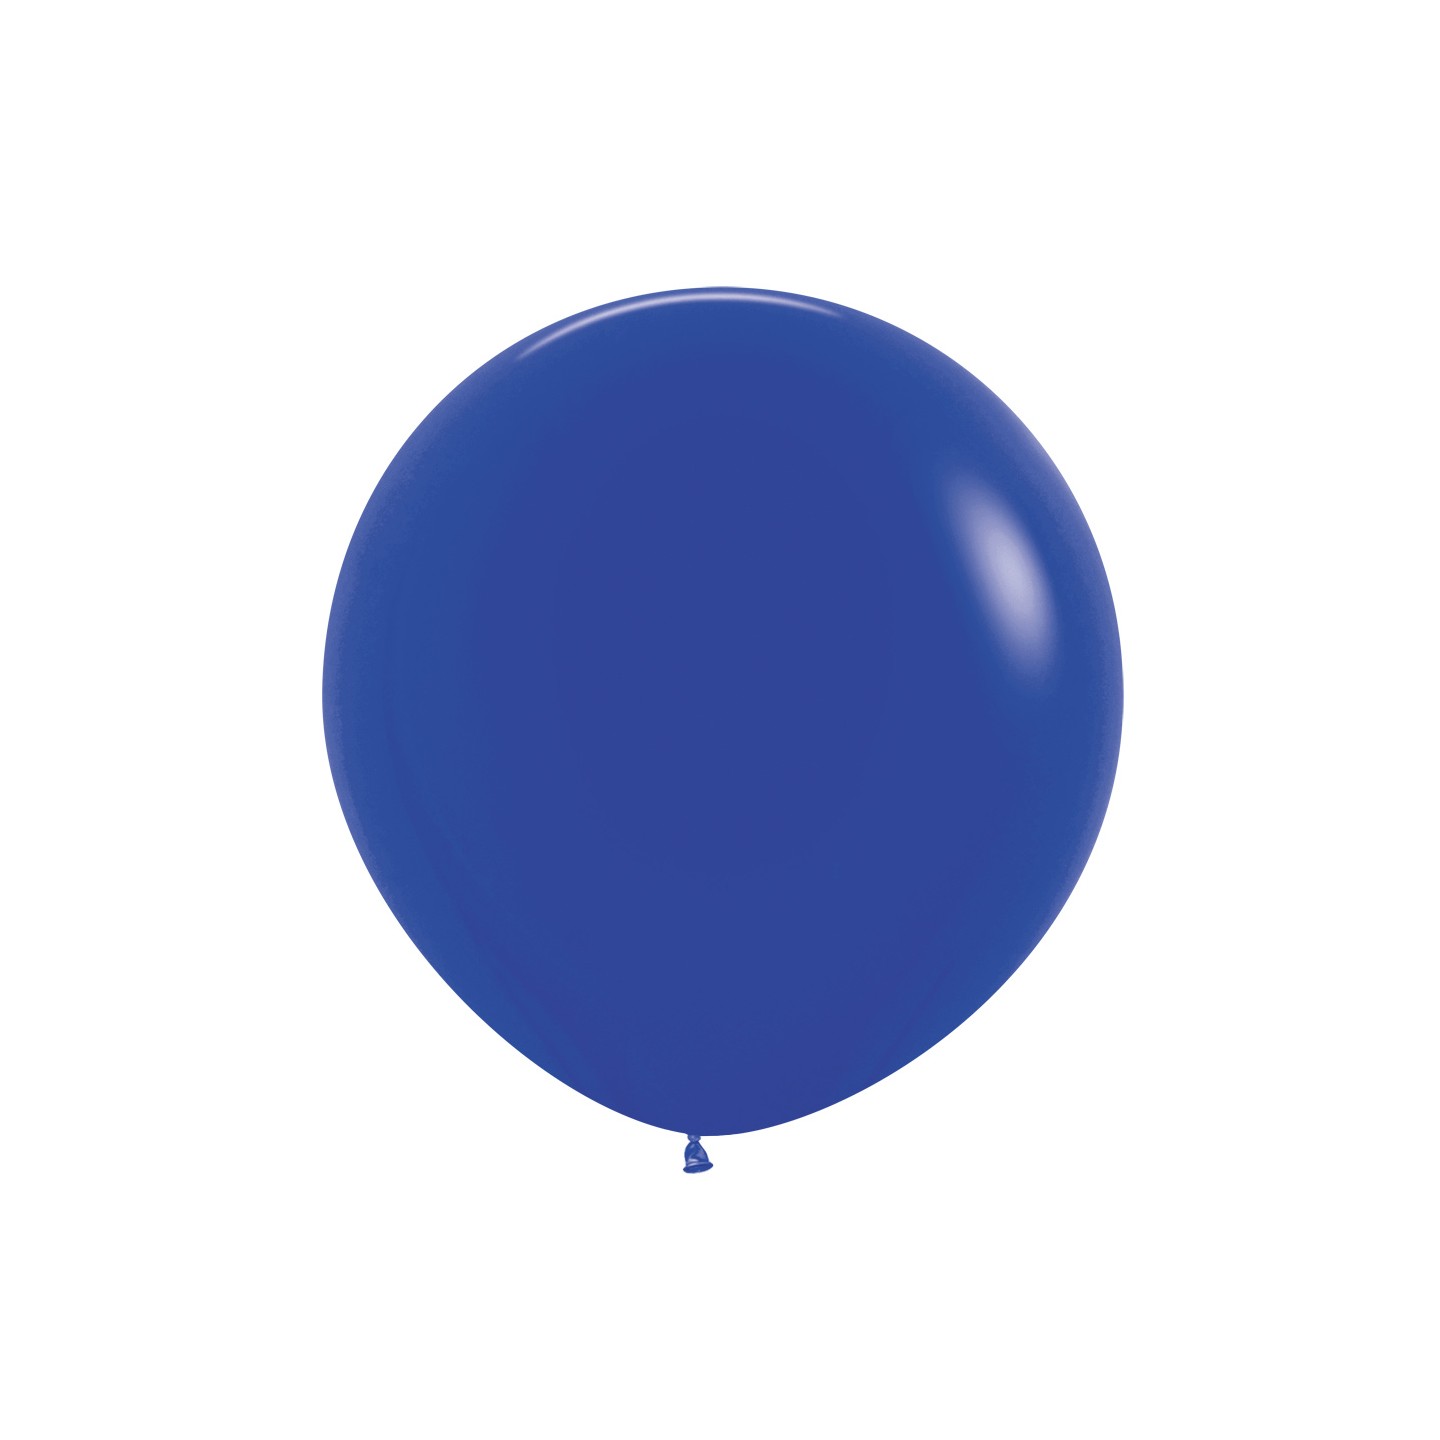 sempertex xl grote ballon royal blue